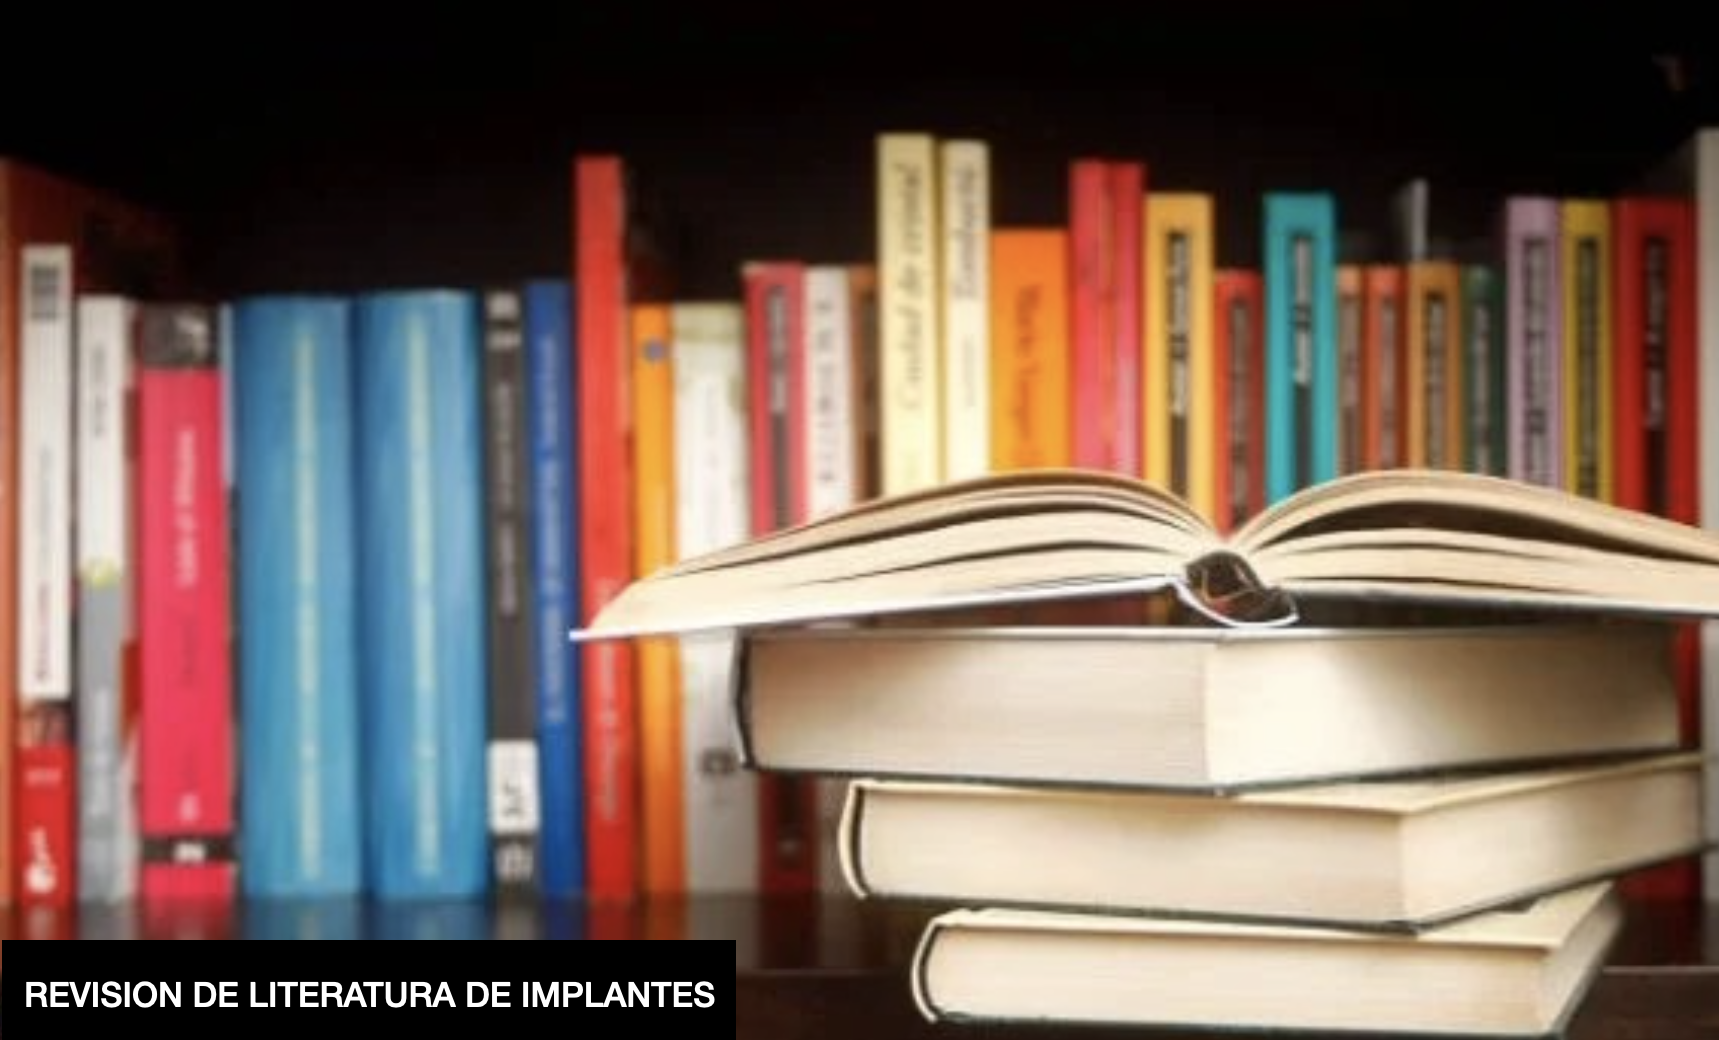 Course Image REVISION DE LITERATURA DE IMPLANTES TENDENCIAS ACTUALES